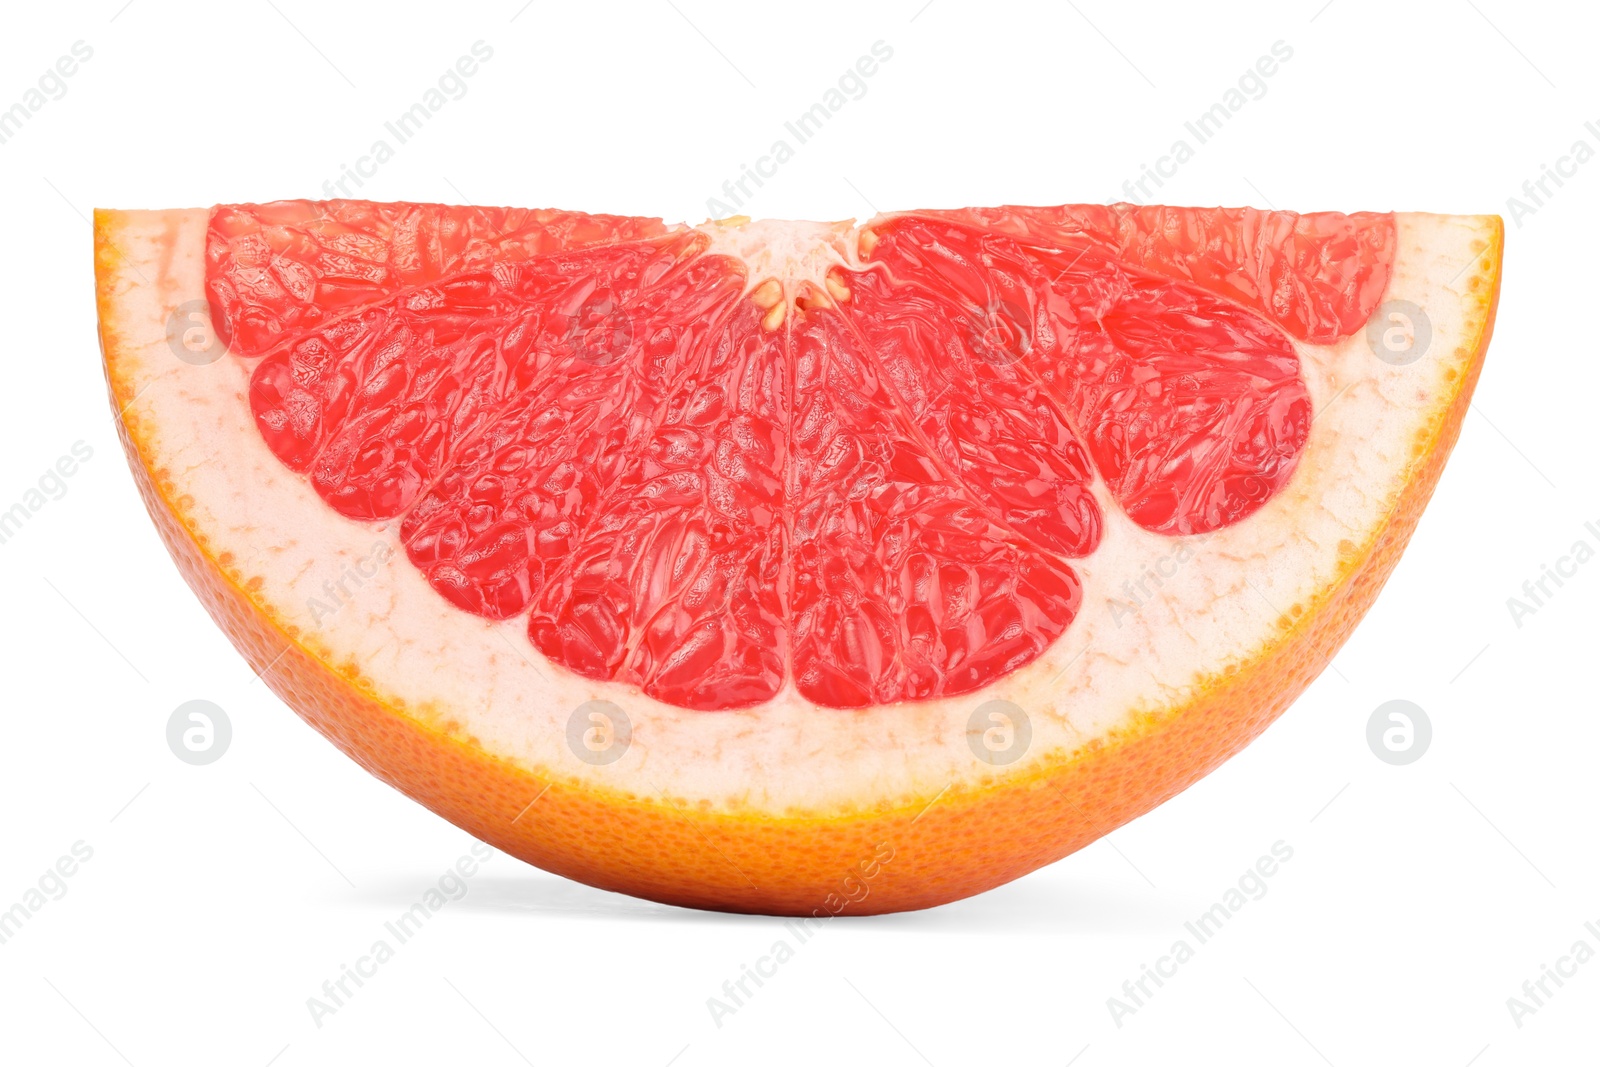 Photo of Cut ripe grapefruit isolated on white. Citrus fruit